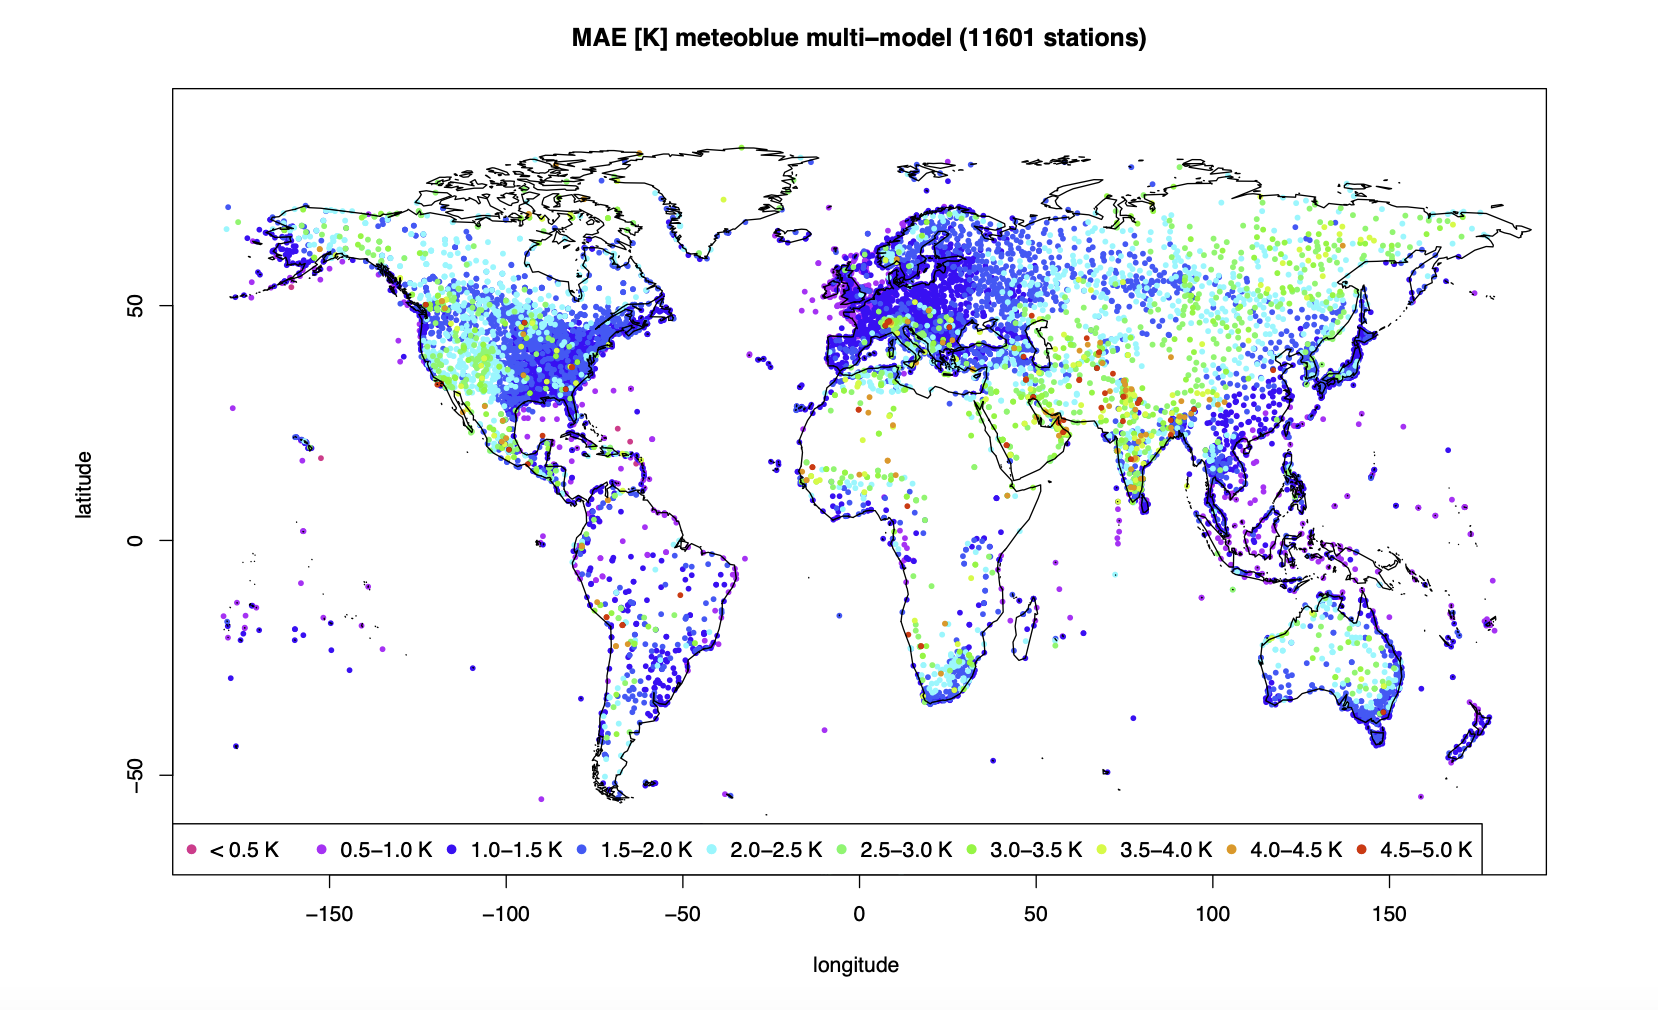 MAE [K] del meteoblue MultiModel utilizado en la previsión operacional, verificado con más de 10'000 mediciones en todo el mundo del año 2018.